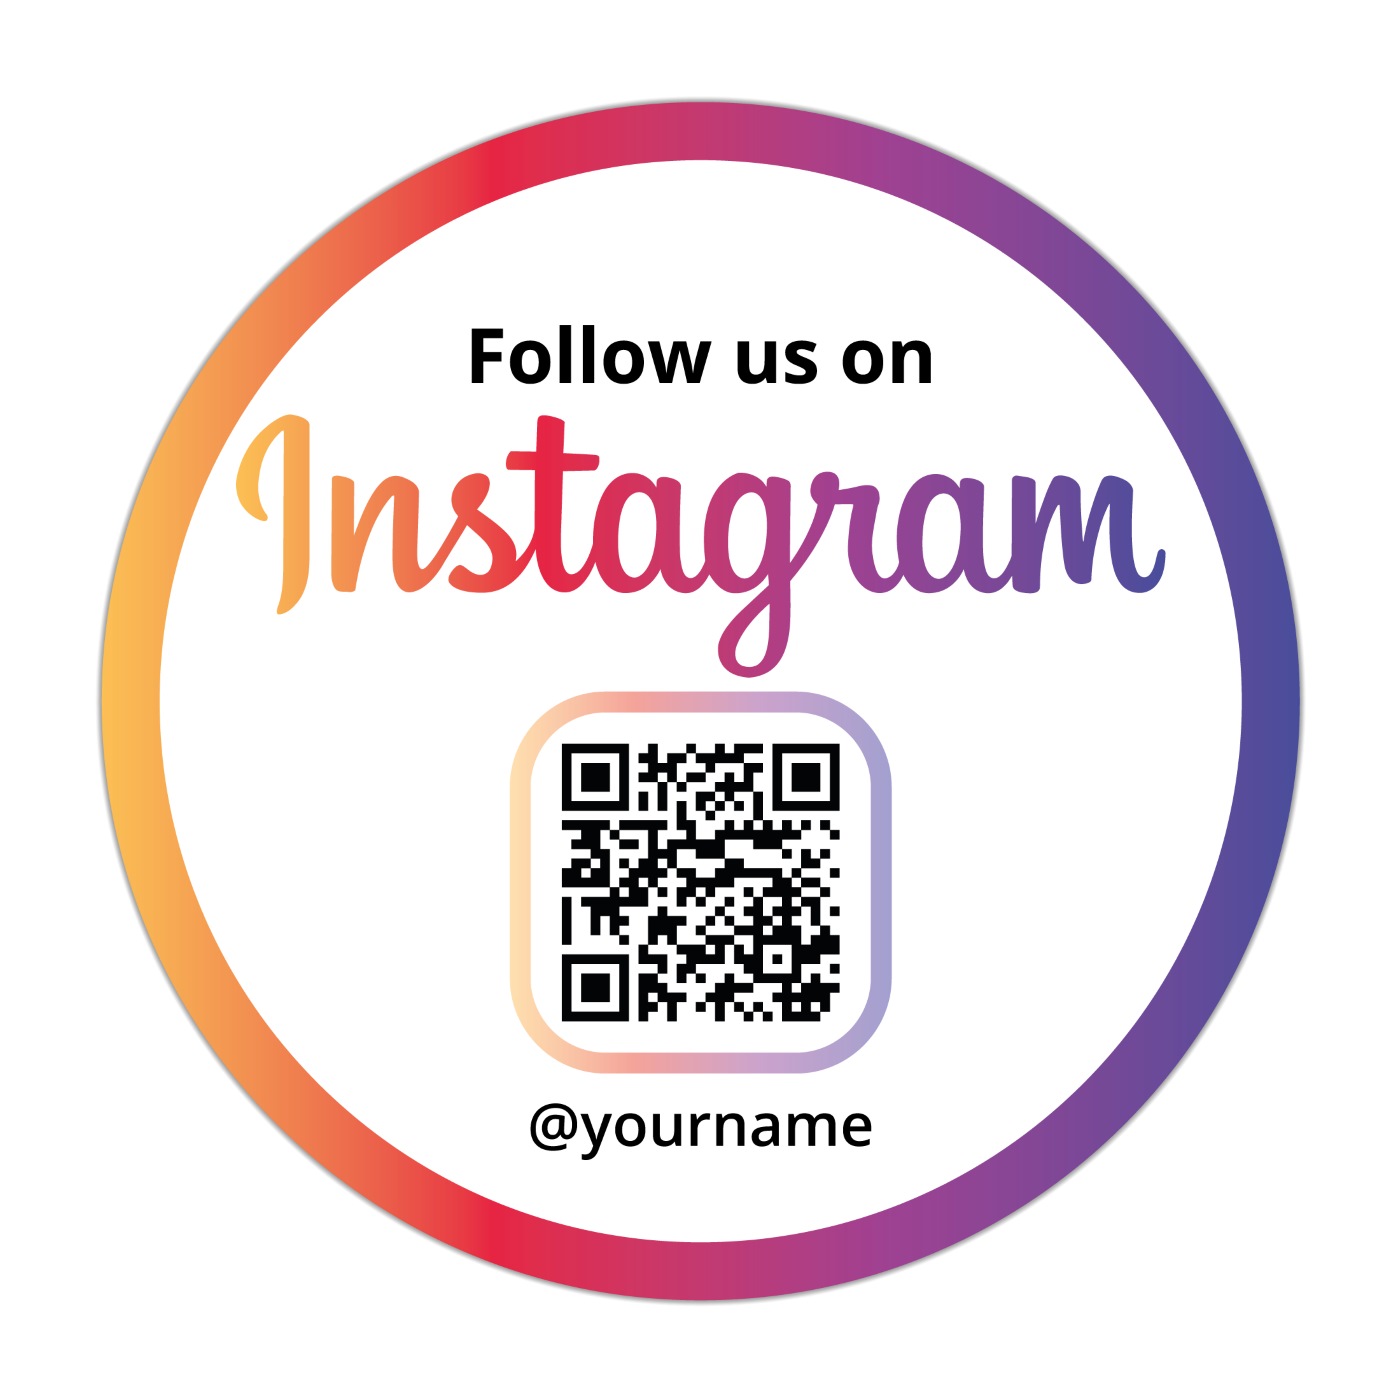 Follow us on Instagram Sticker Clean